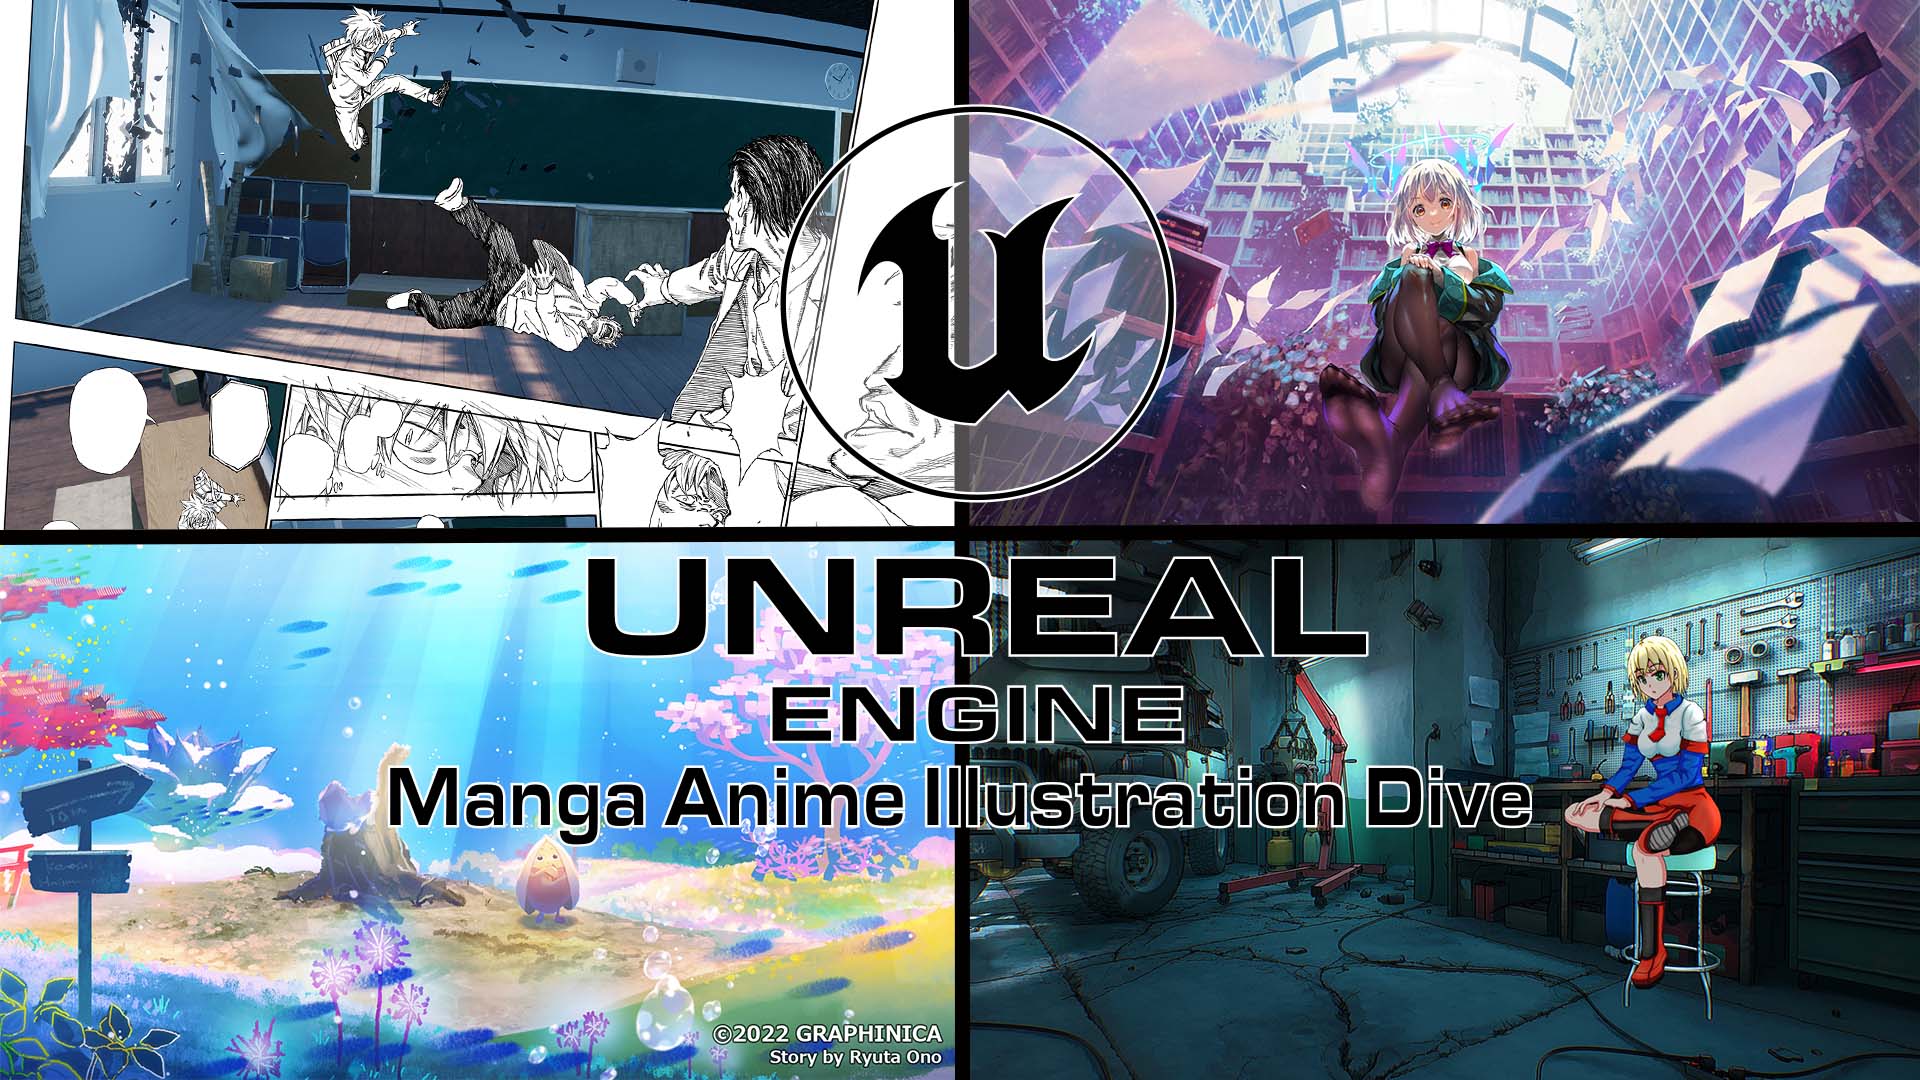 Ue4を使った漫画 アニメ イラスト制作について学びましょう Ue4 Manga Anime Illustration Dive Online 開催 Epic Games Japanのプレスリリース